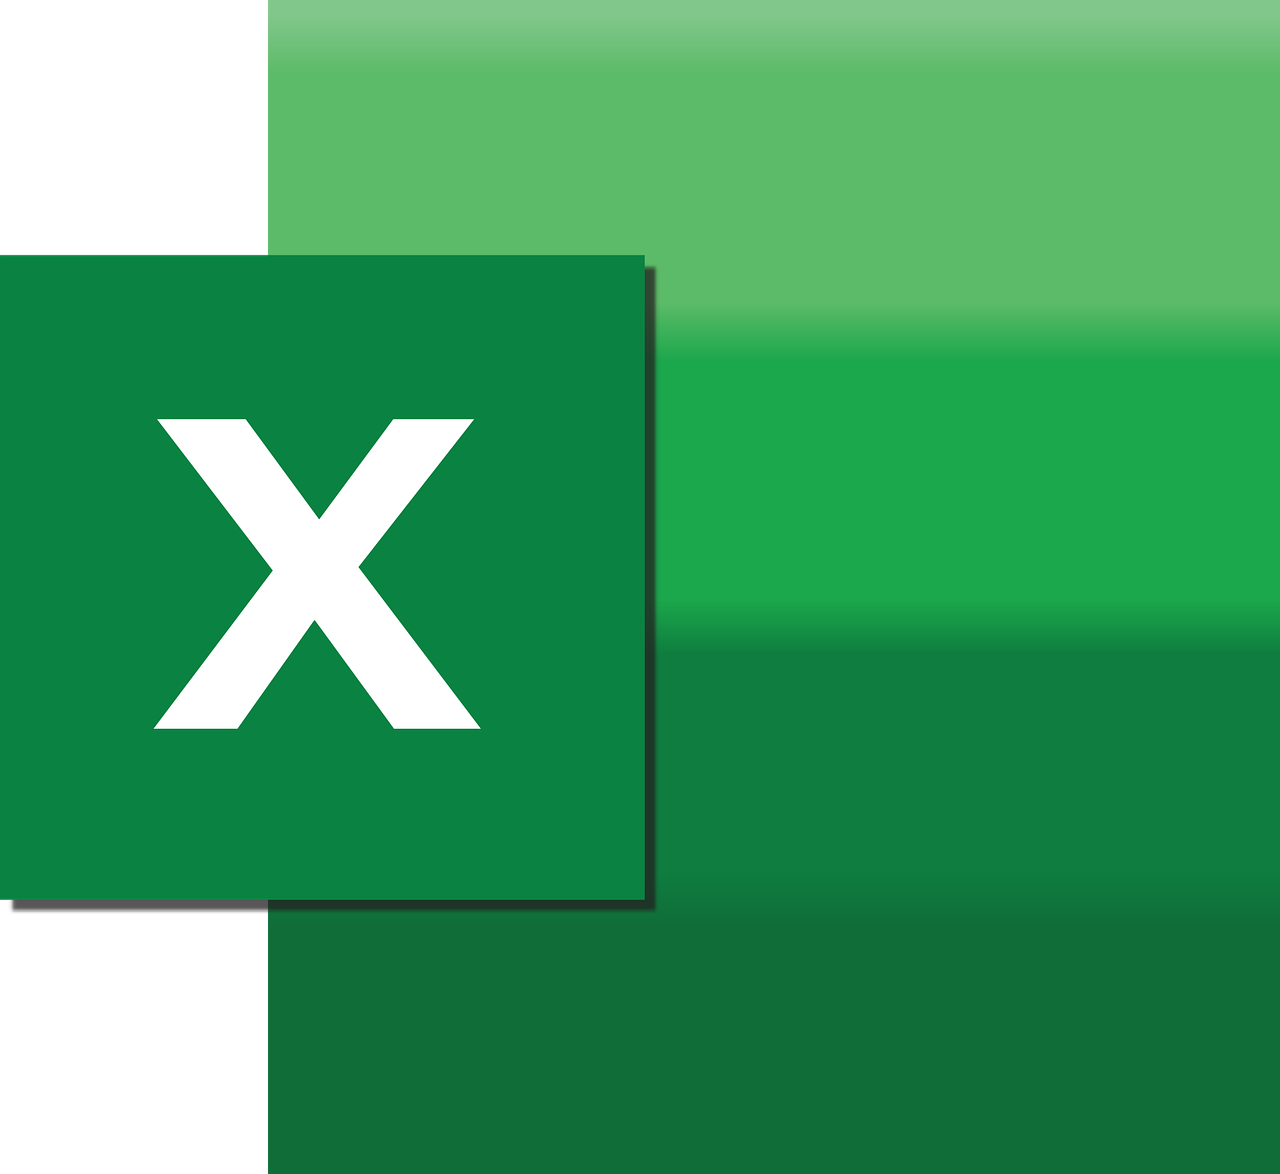 ¿Cómo hacer una nómina sencilla en Excel?